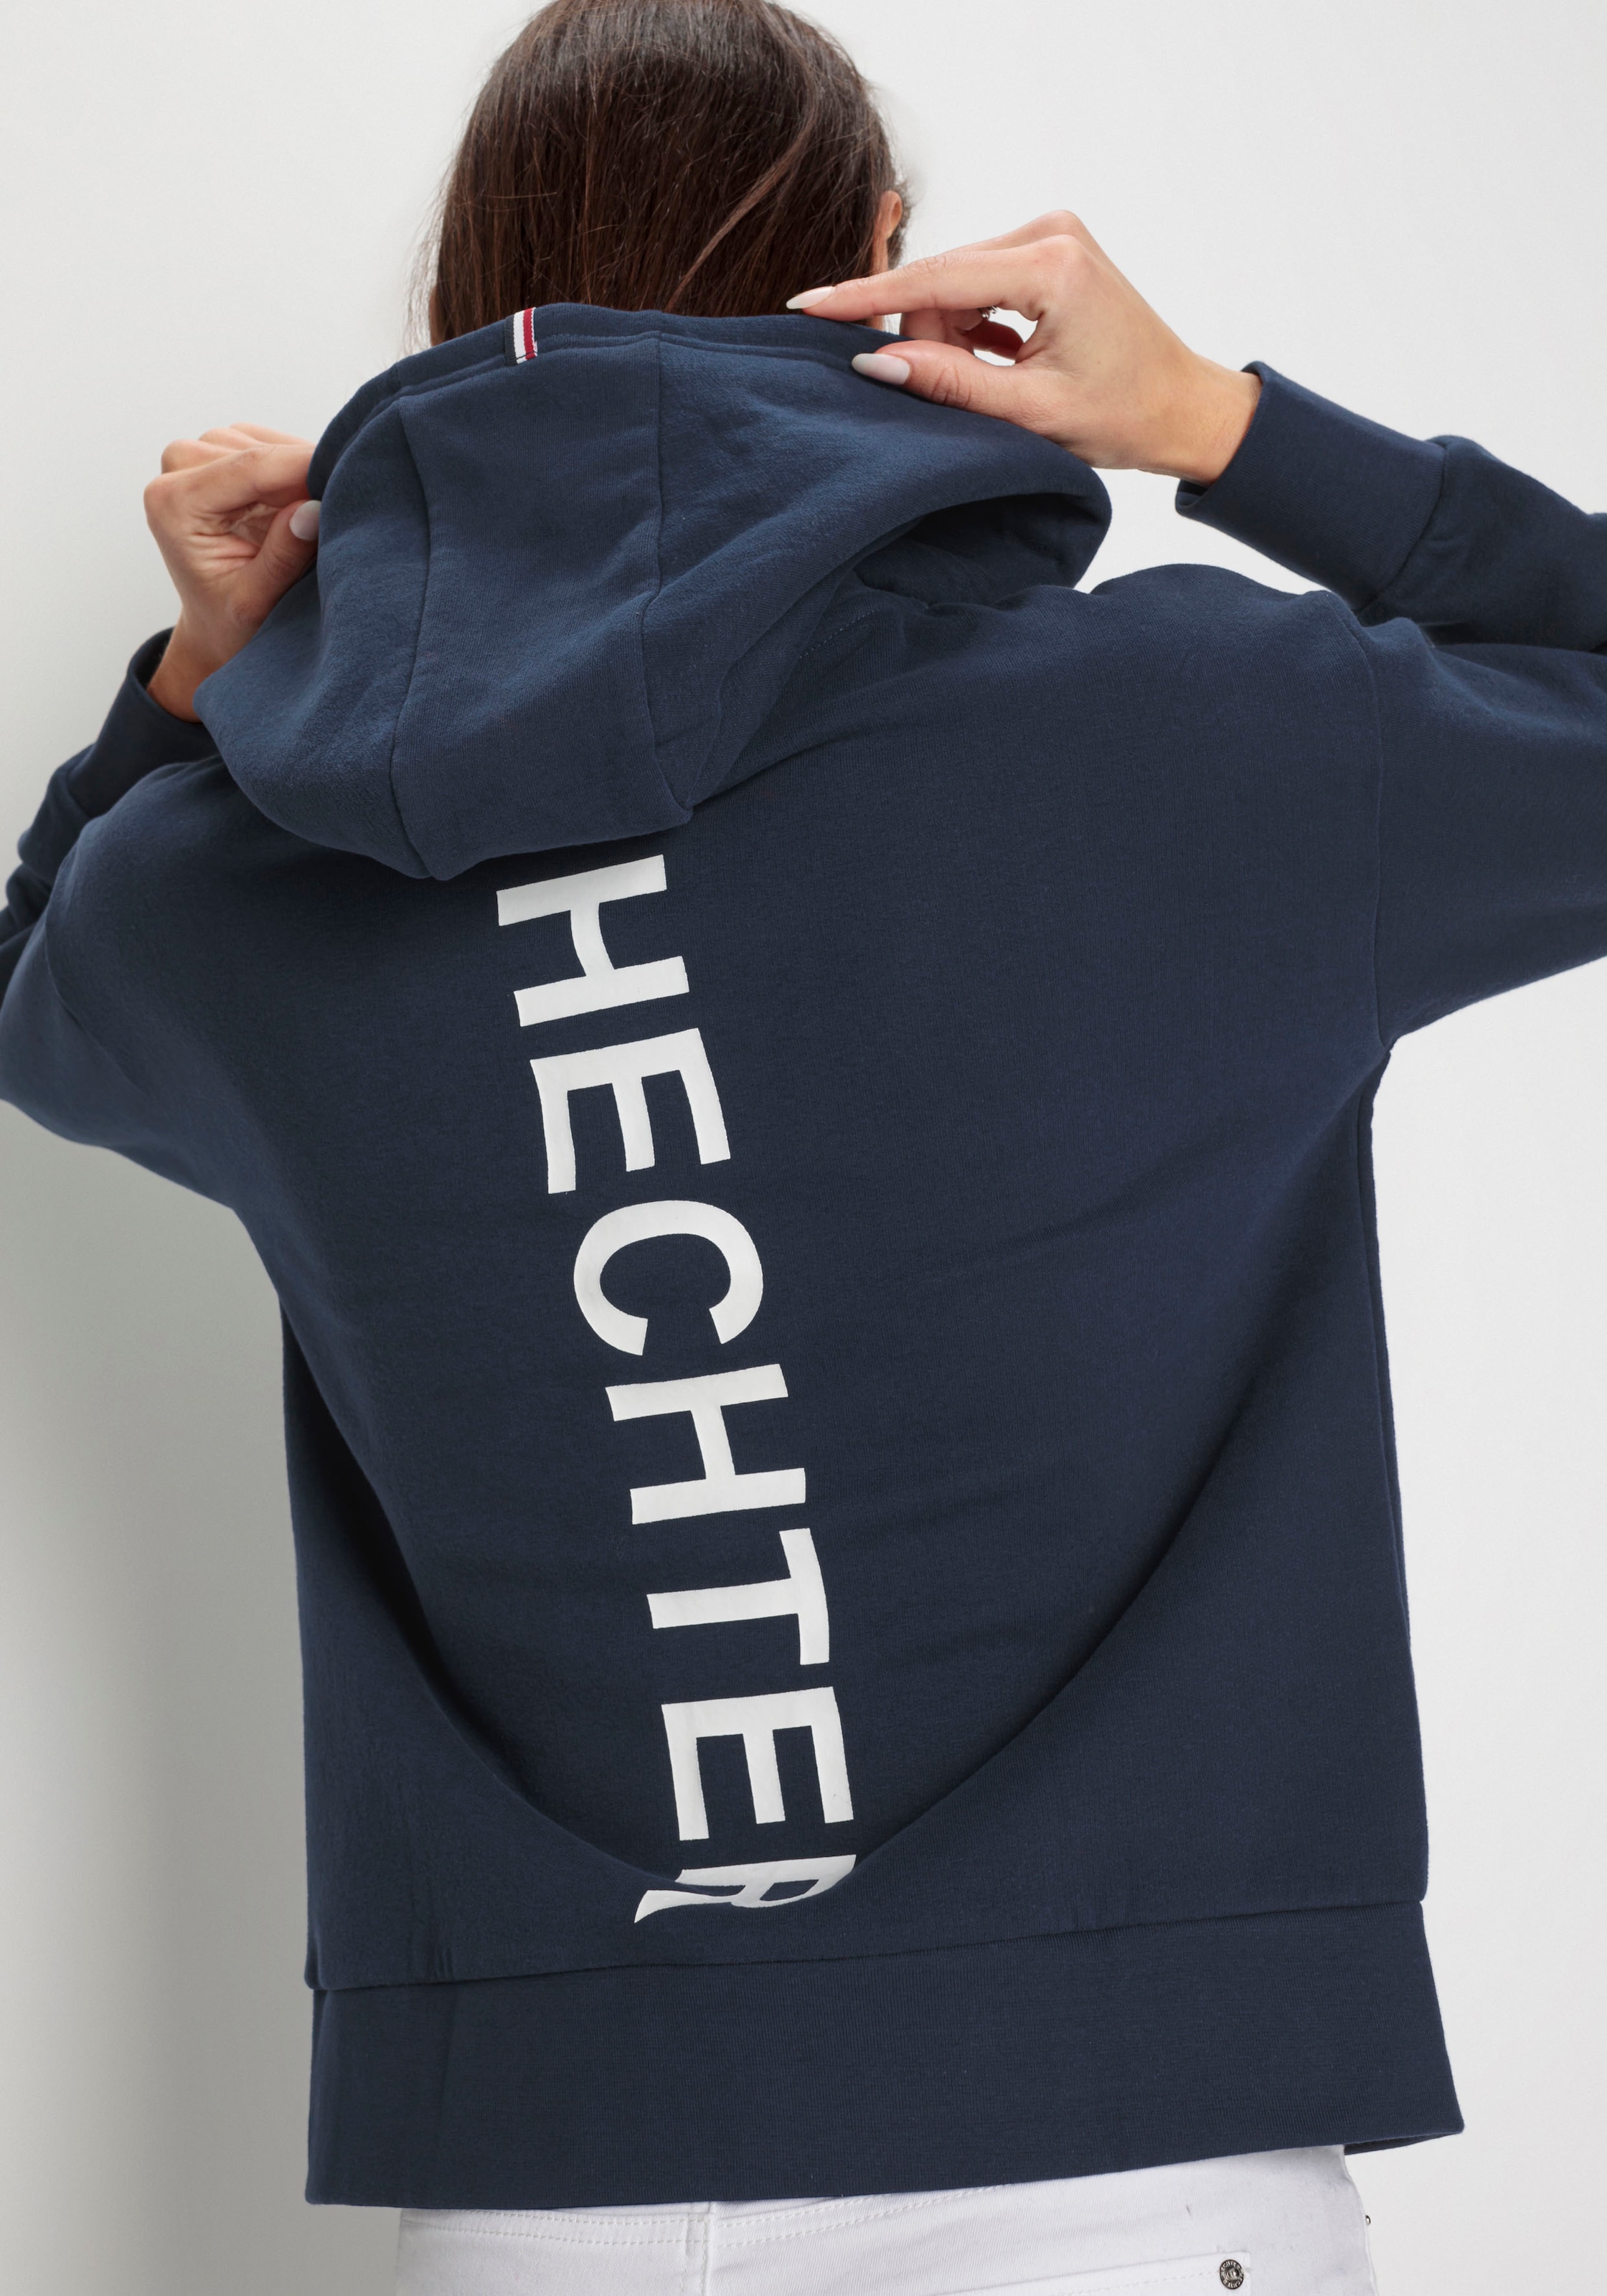 HECHTER PARIS Sweatshirt, mit Backprint - NEUE KOLLEKTION online kaufen |  I'm walking